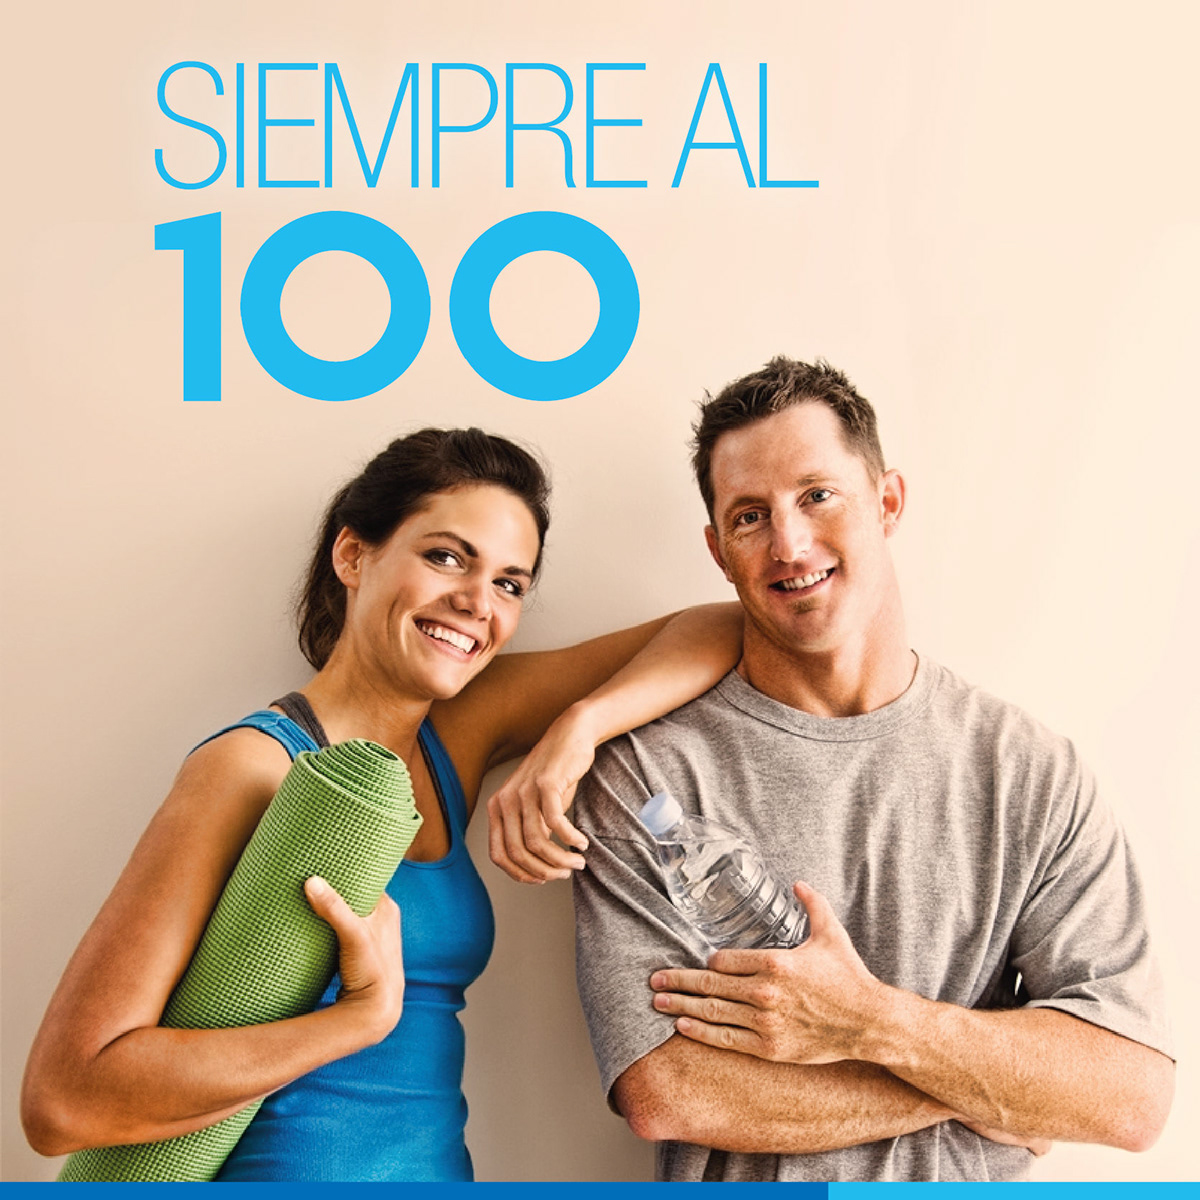 Tec100 Queretaro campaign Hospital Campaign rebecacubillo cubillodesign